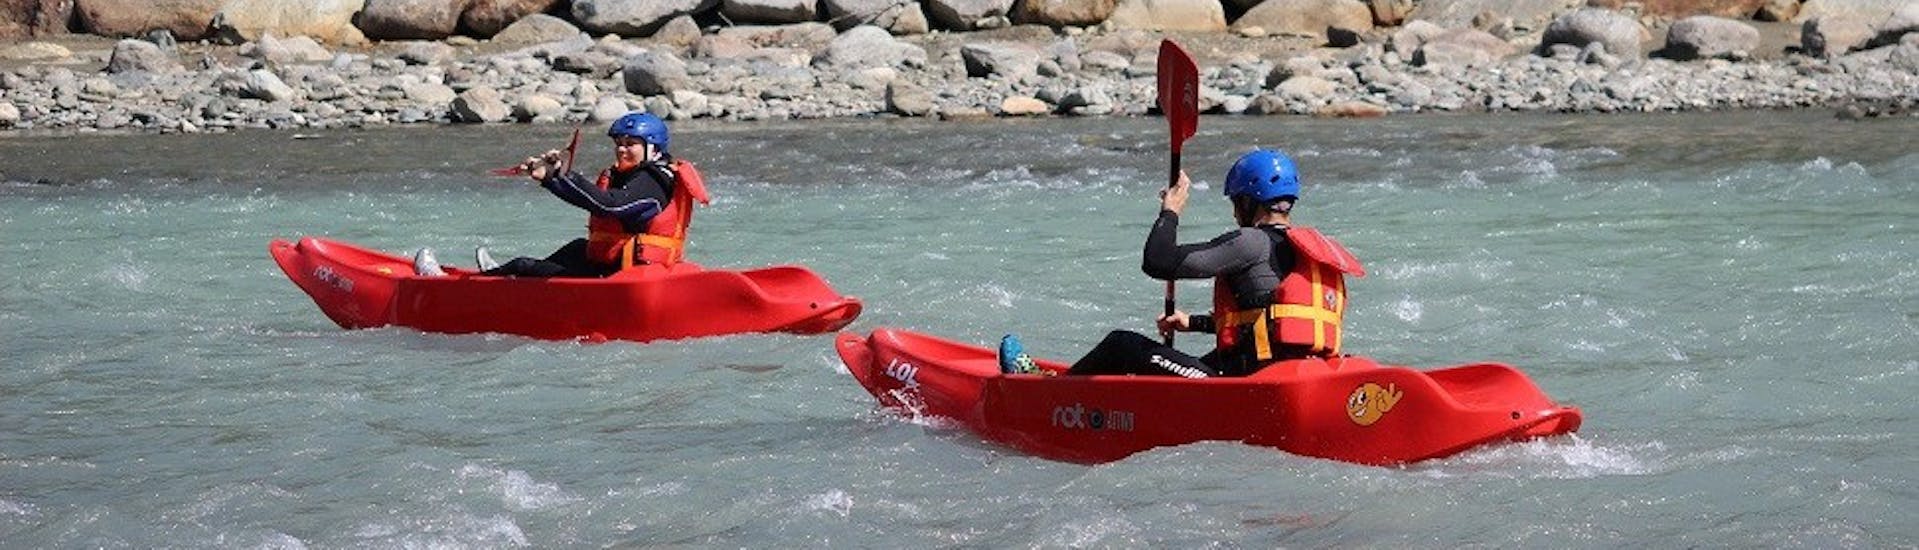 Kayak y piragua avanzado en Castione Andevenno - Adda.